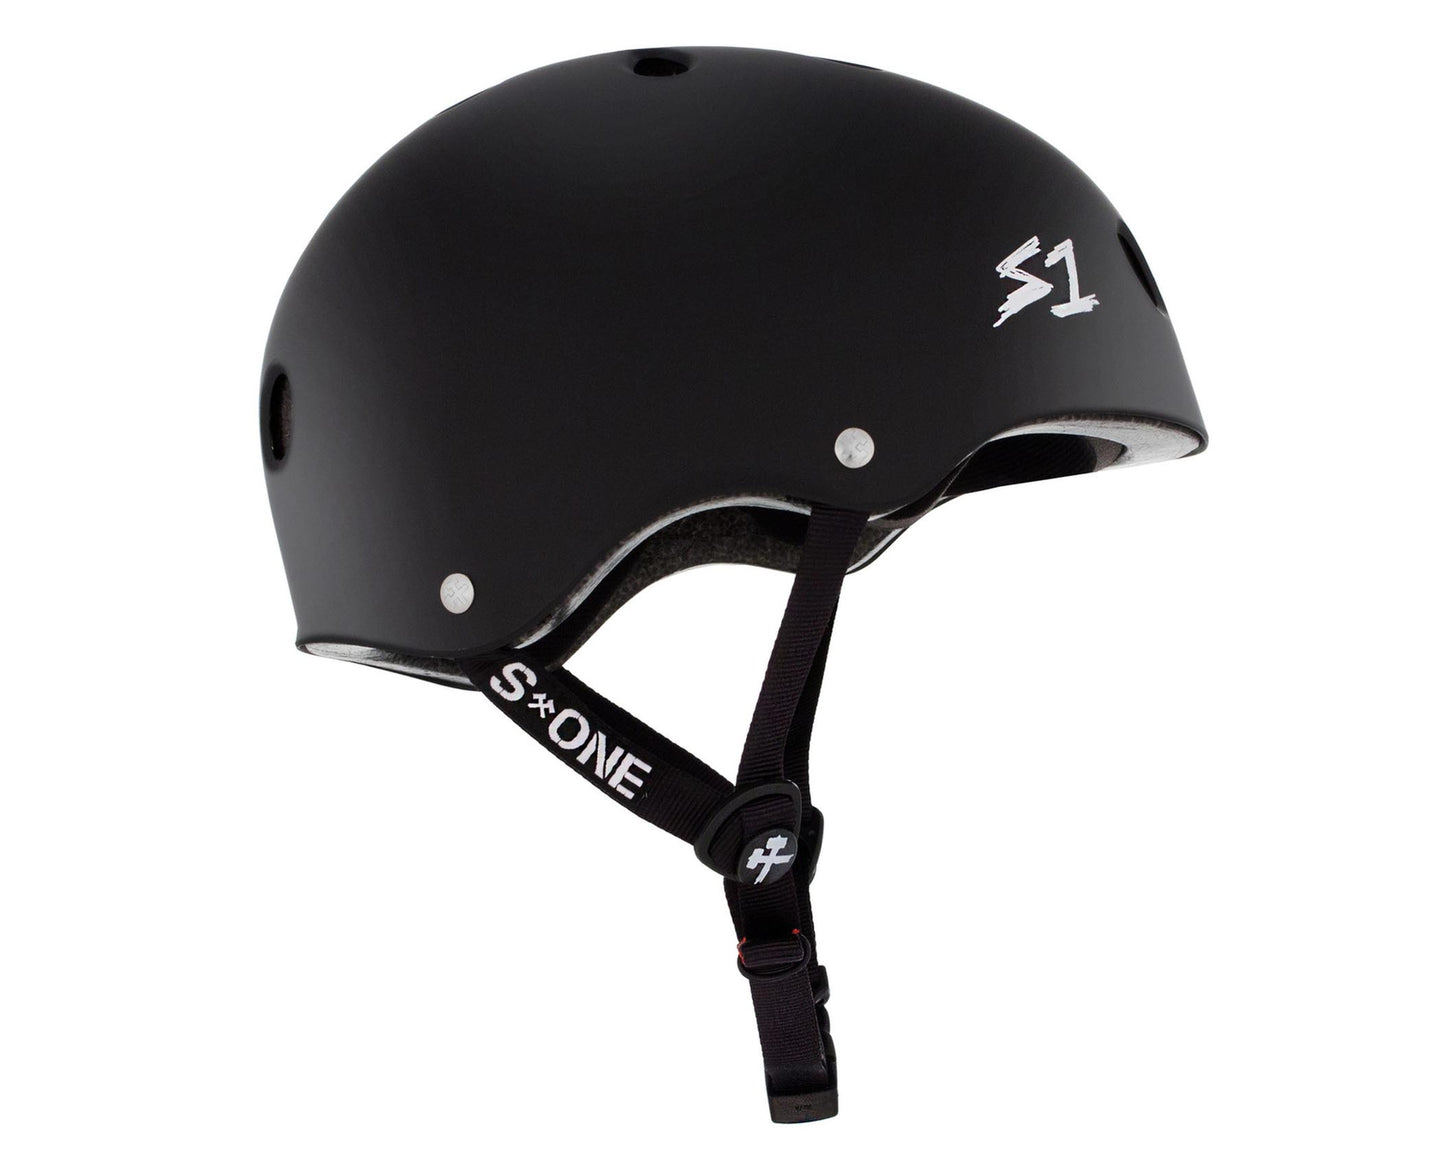 S1 Lifer Helmet - Black Matte